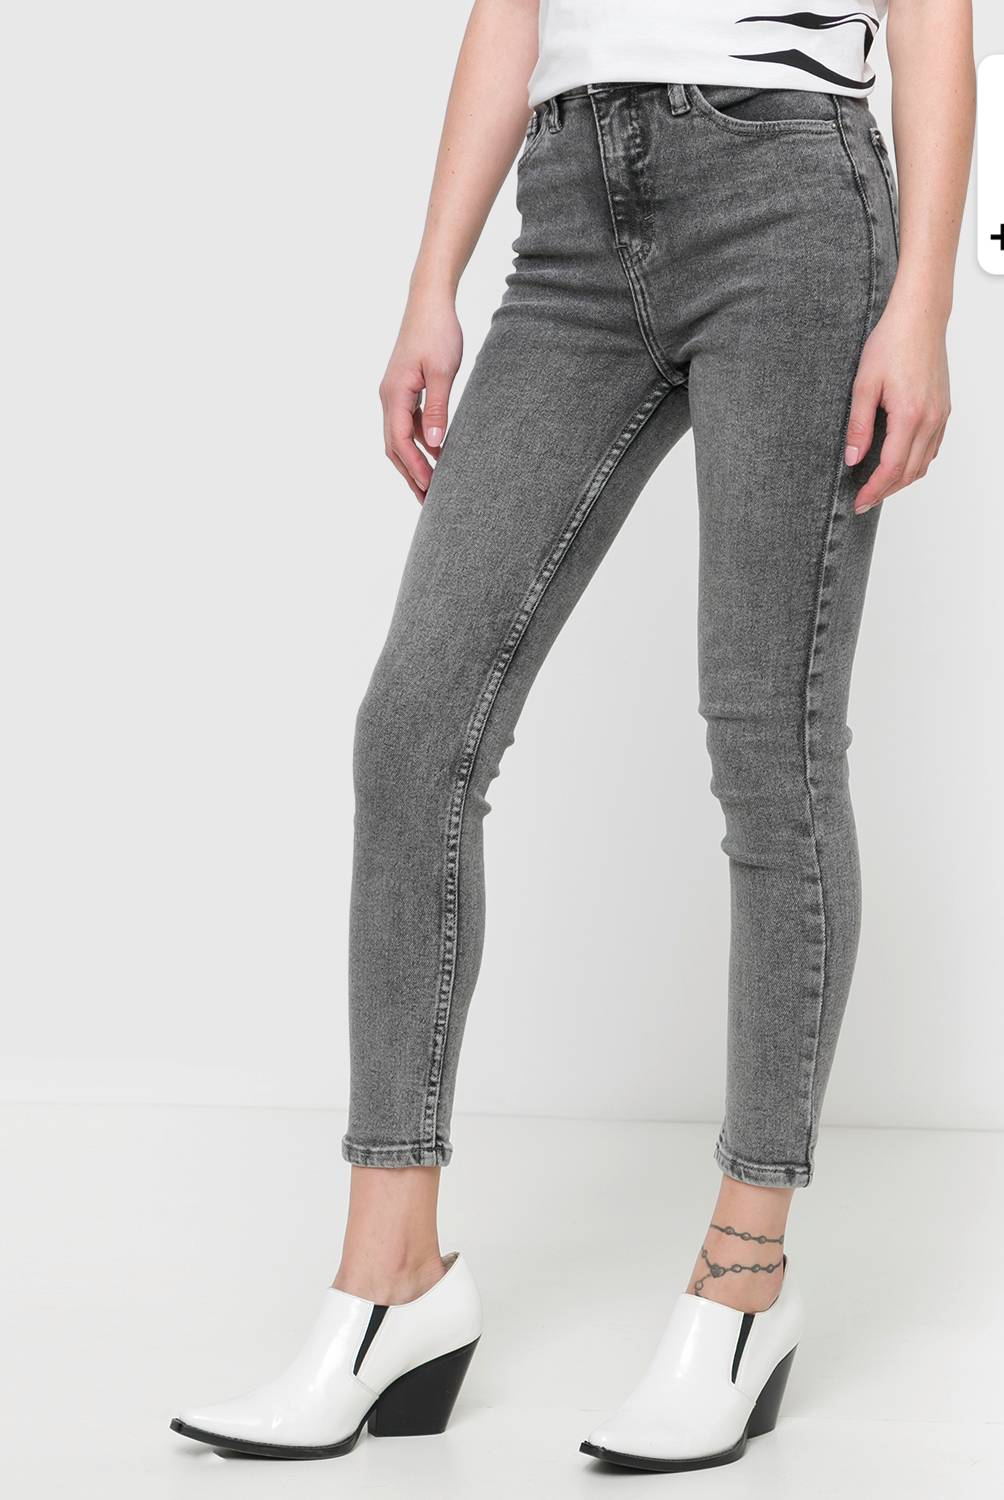 AMERICANINO - Jeans Slouchy Tiro Alto Mujer